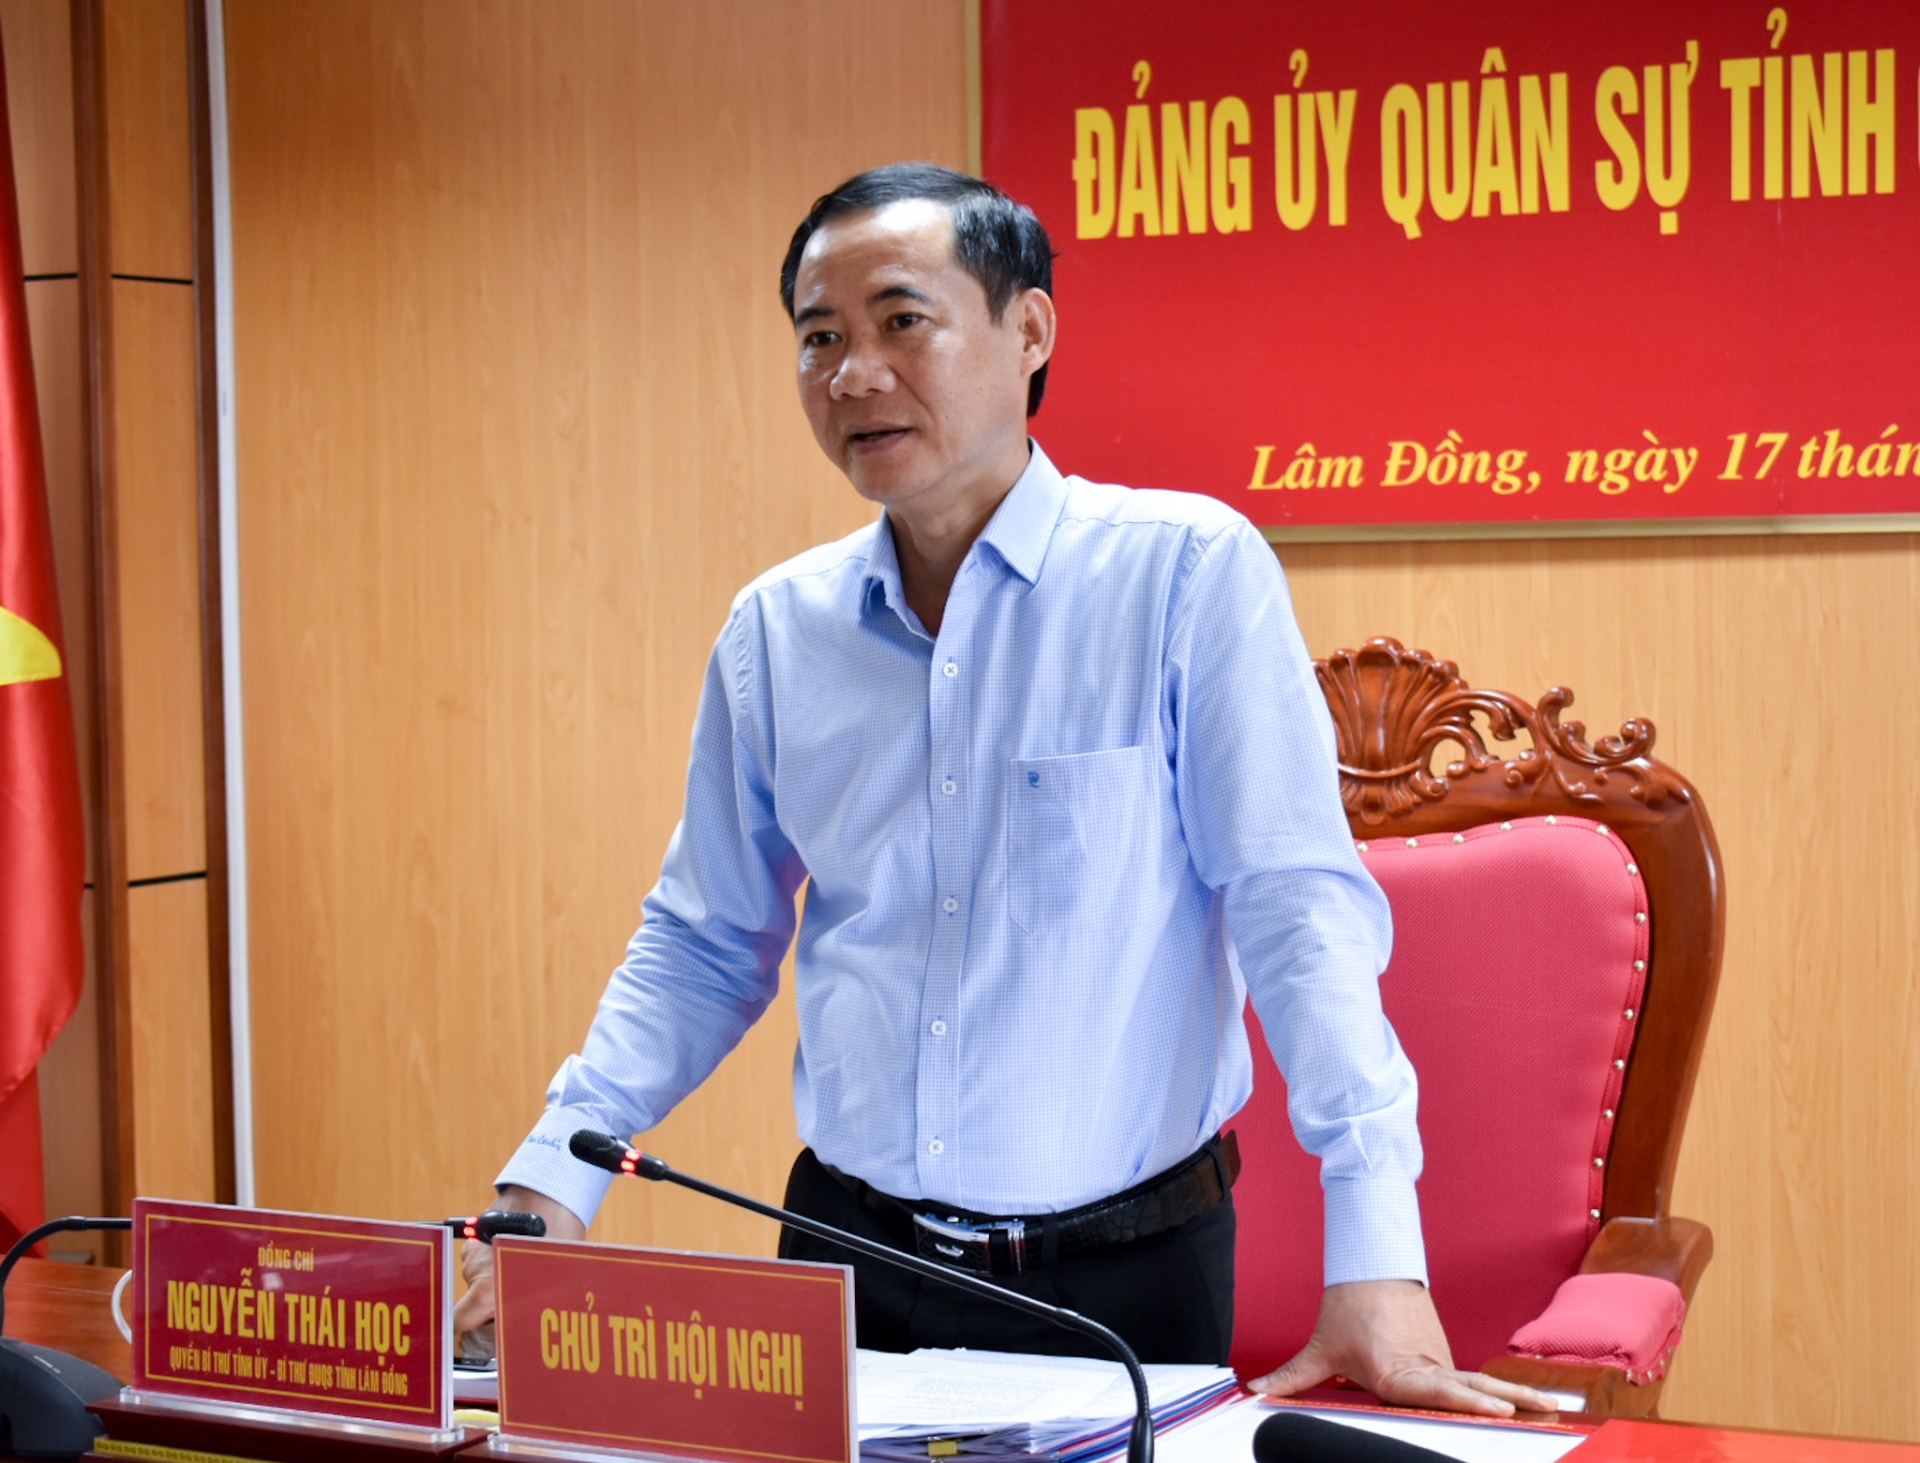 Đồng chí Nguyễn Thái Học - Quyền Bí thư Tỉnh ủy Lâm Đồng, Bí thư Đảng ủy Quân sự tỉnh phát biểu chỉ đạo hội nghị 